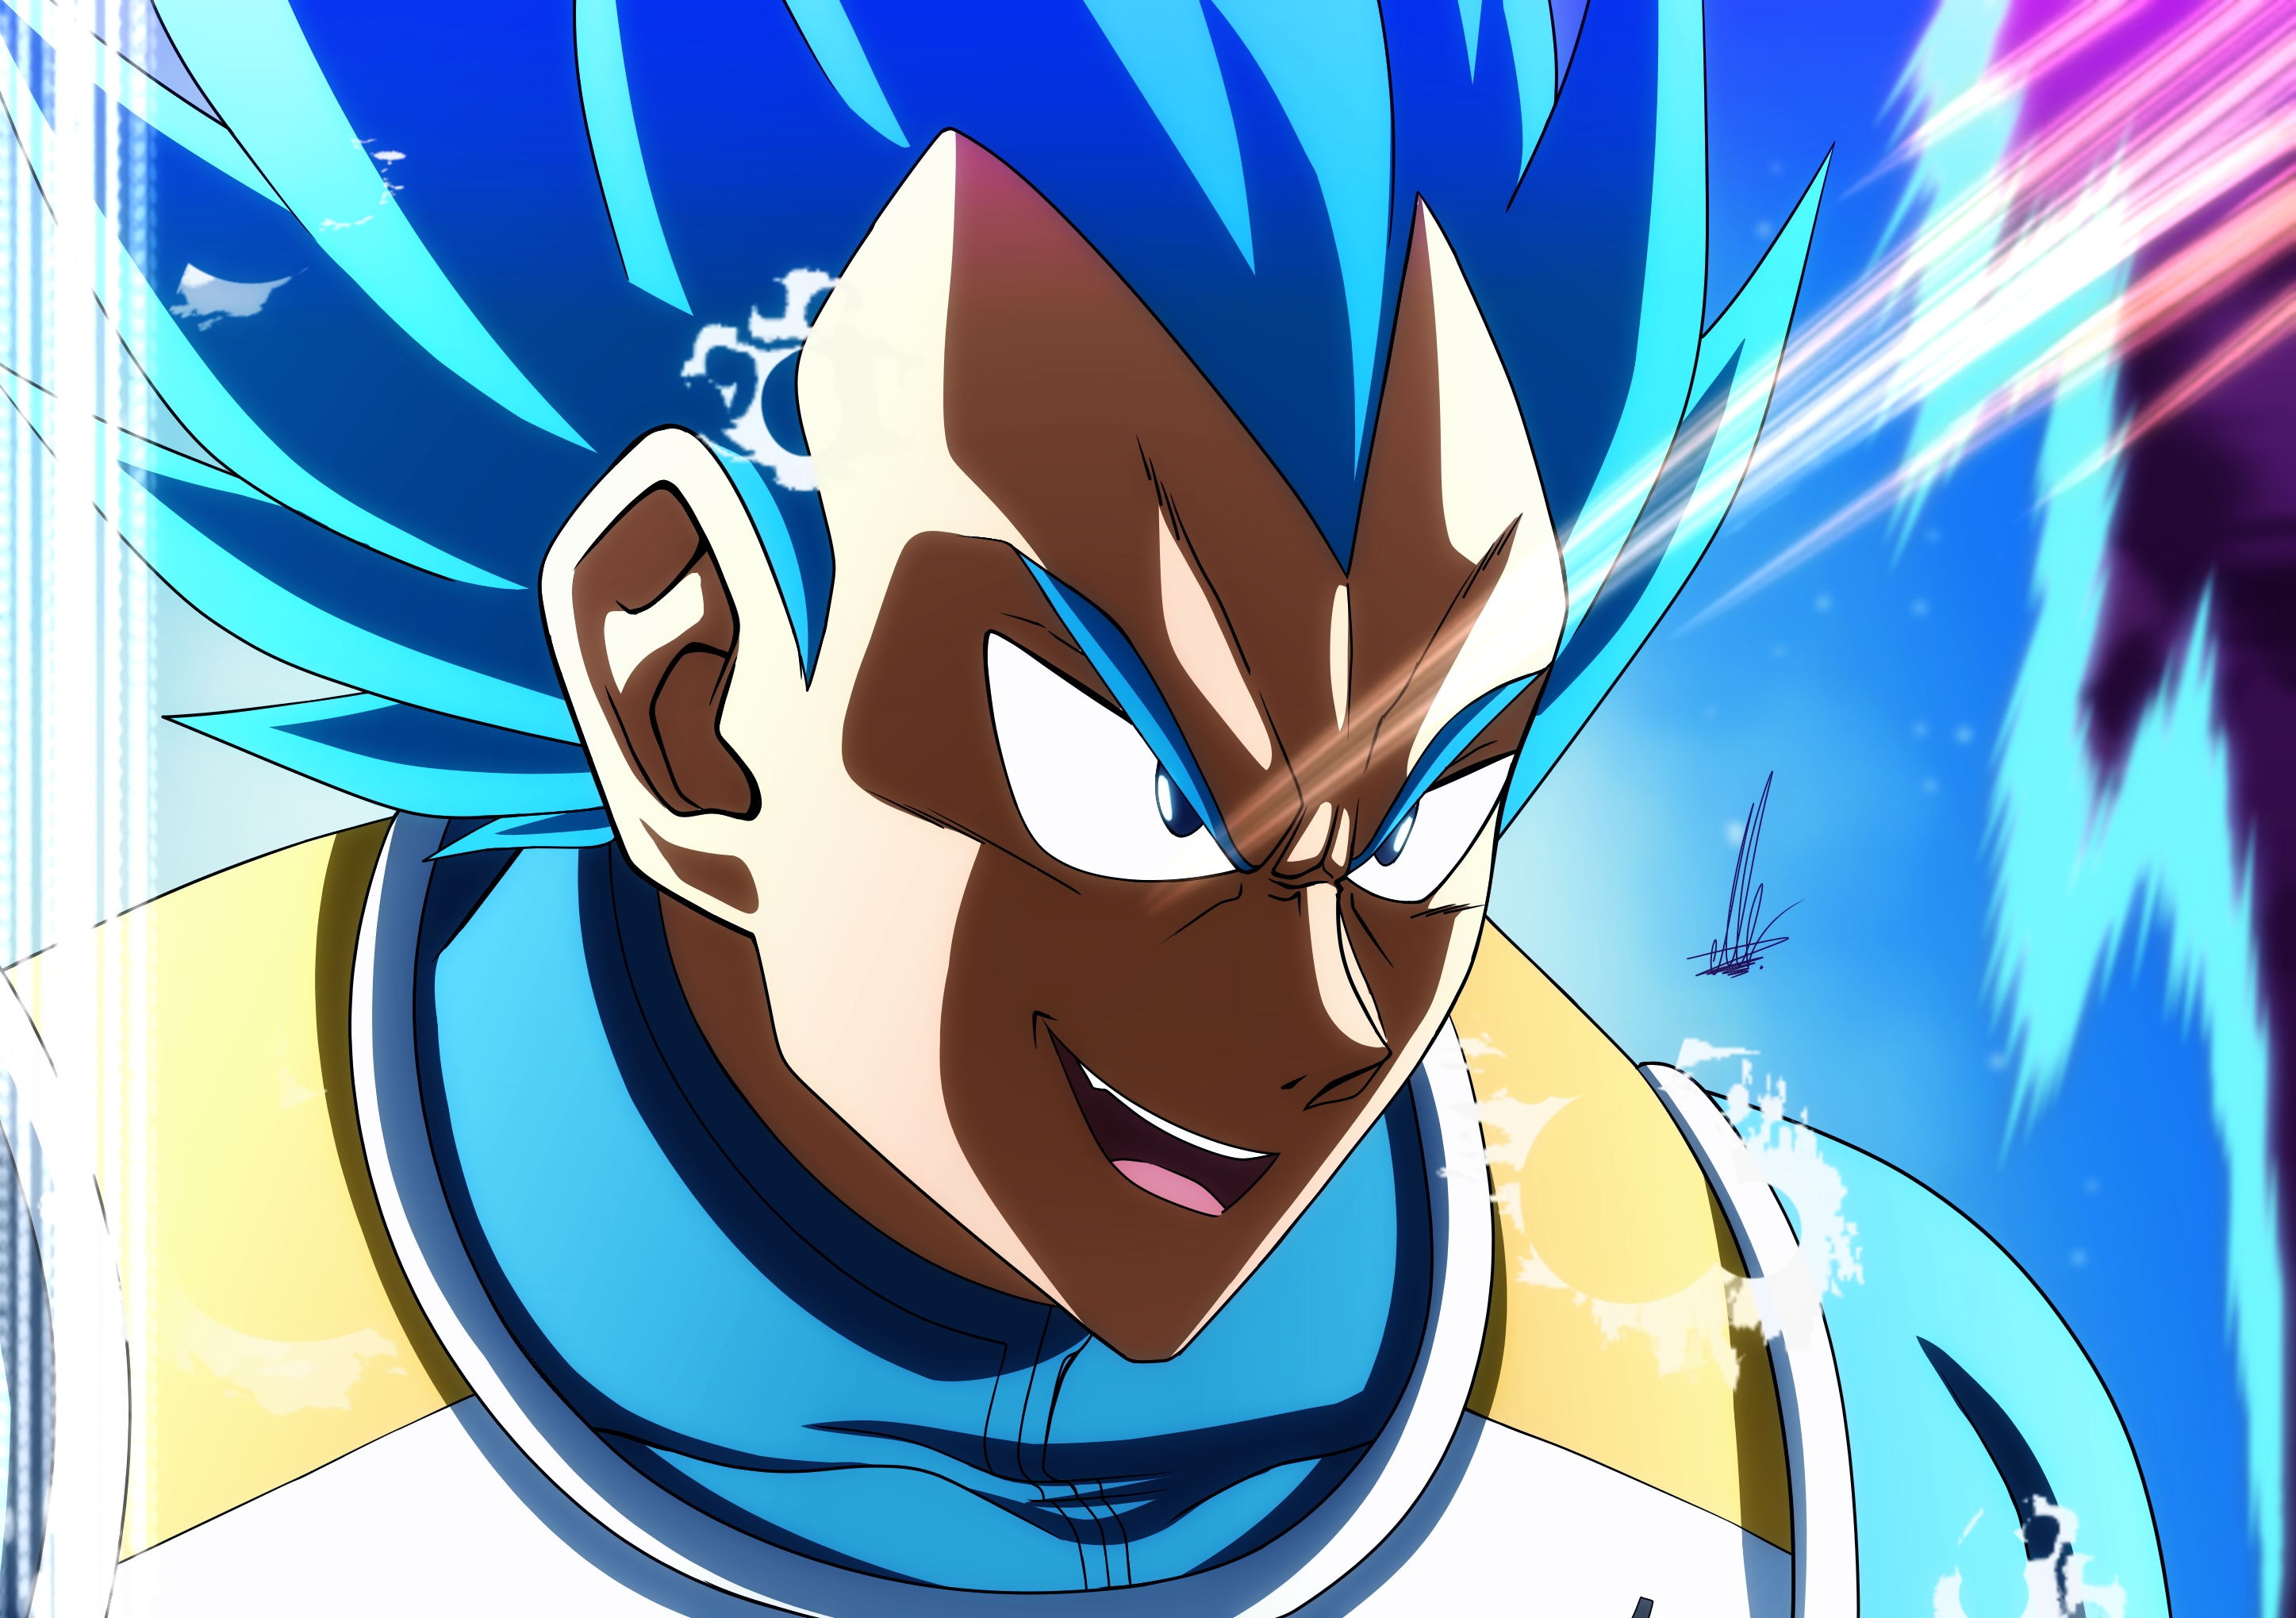 Goku Super Saiyan 5 Toyble Render by Unkoshin on DeviantArt